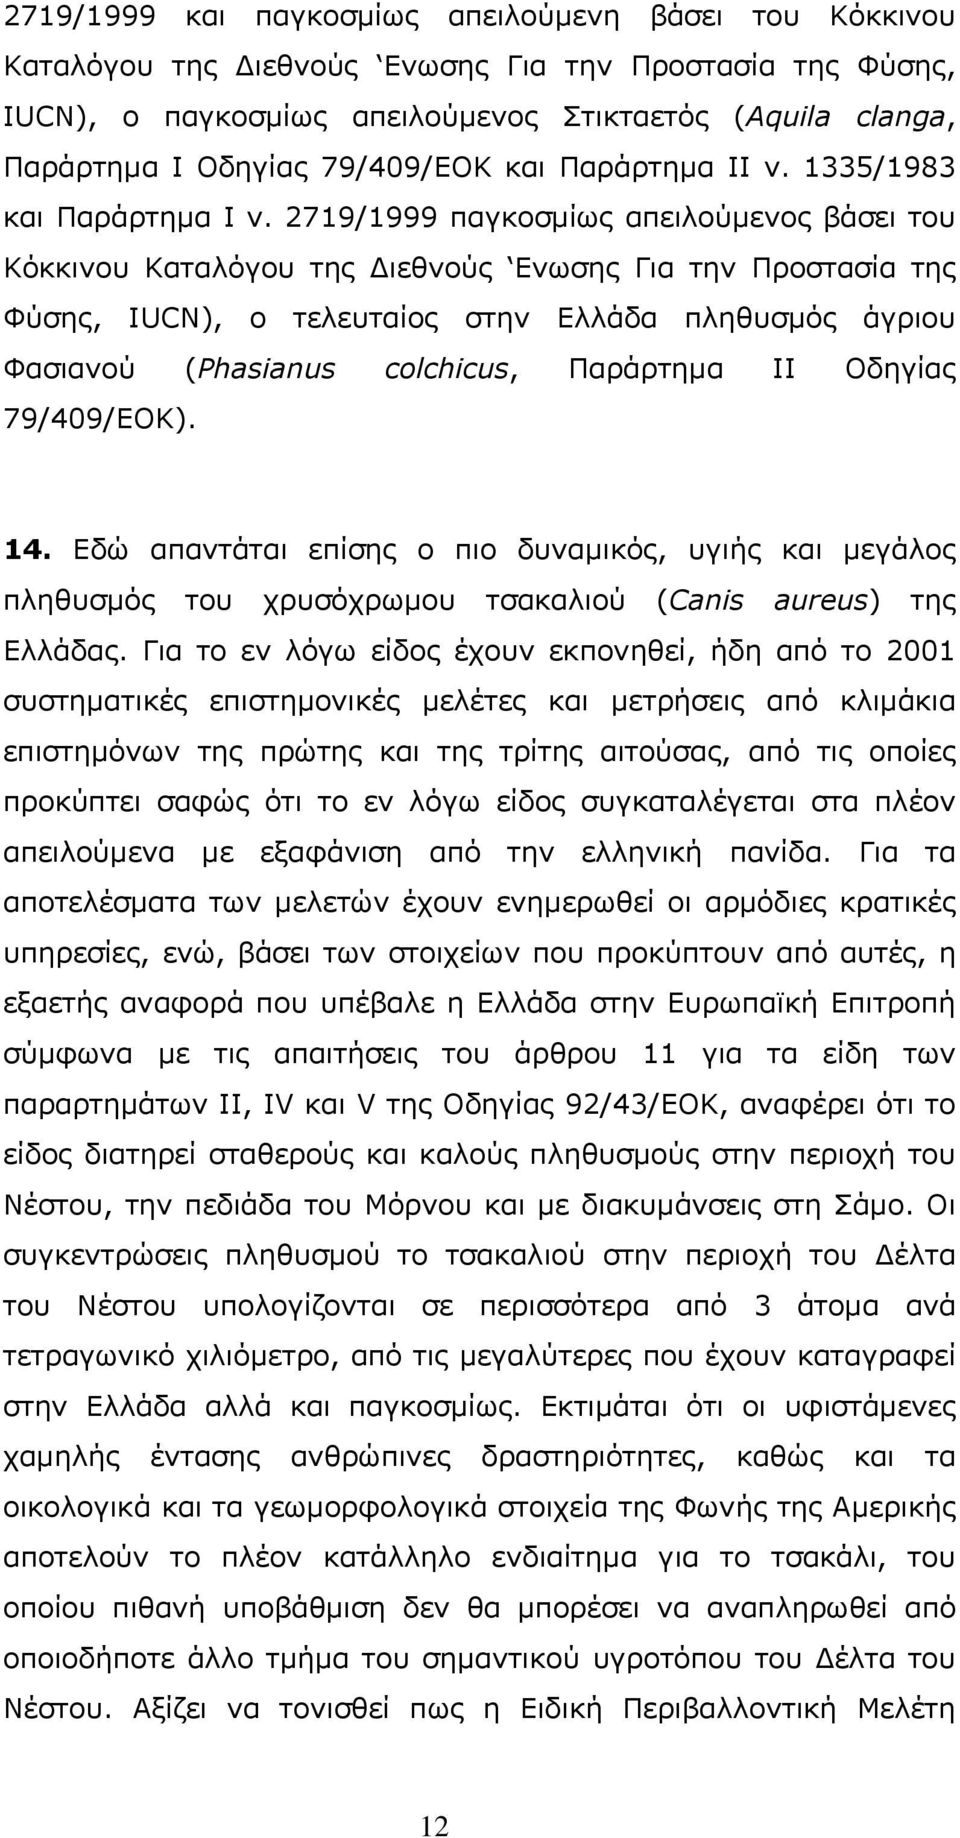 2719/1999 παγκοσμίως απειλούμενoς βάσει του Κόκκινου Καταλόγου της Διεθνούς Ενωσης Για την Προστασία της Φύσης, IUCN), ο τελευταίος στην Ελλάδα πληθυσμός άγριου Φασιανού (Phasianus colchicus,